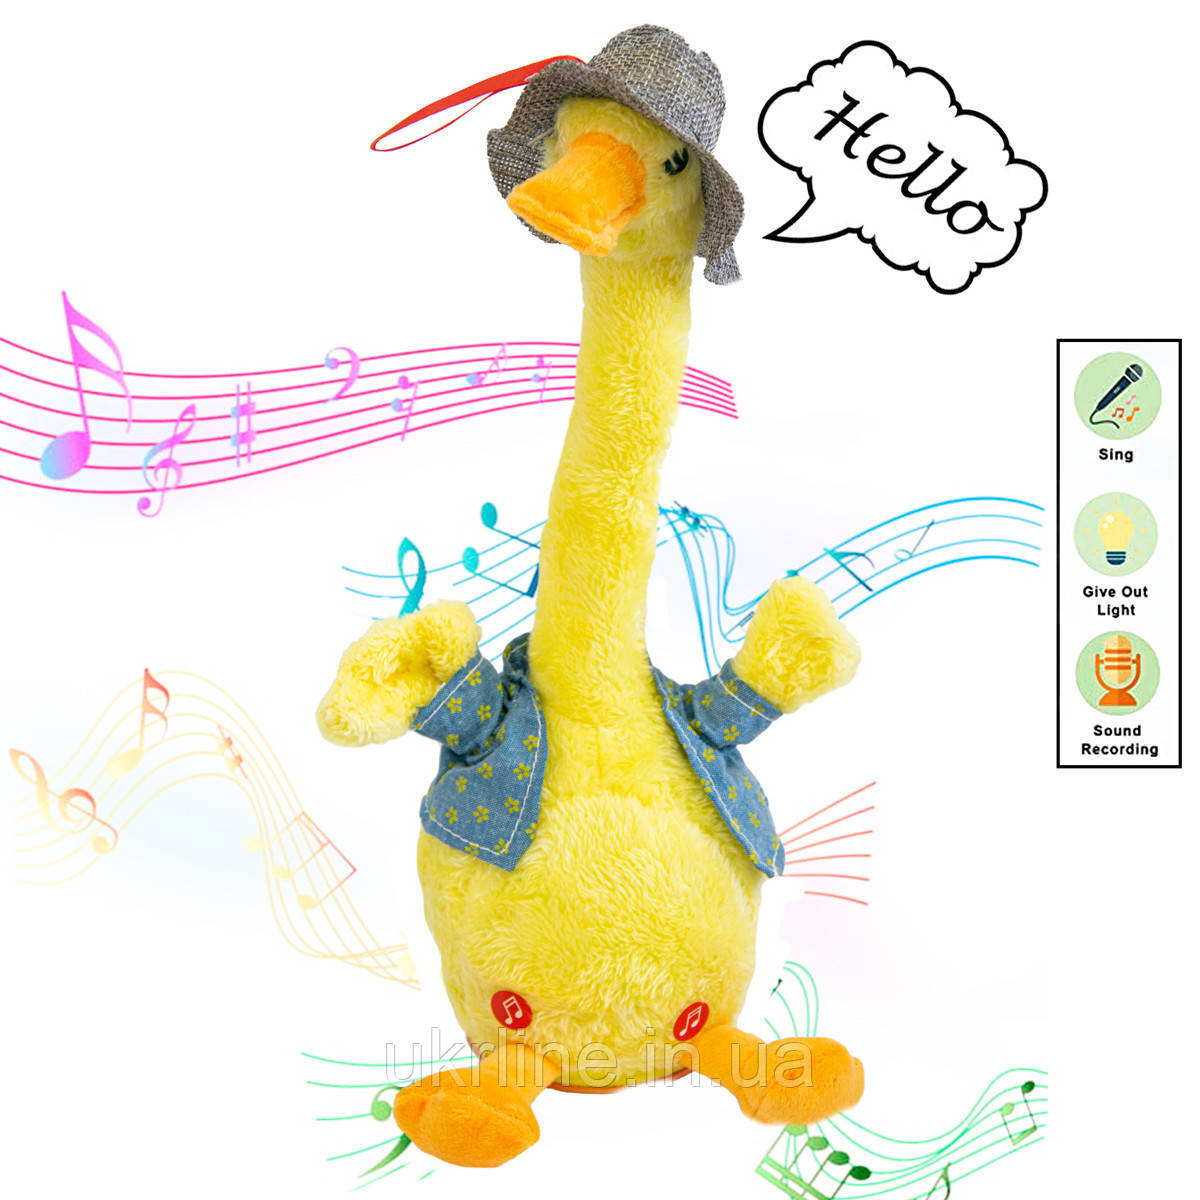 Інтерактивна іграшка повторюшка Качка в жилетці Dansing duck, качка, що танцює, м'яка музична іграшка